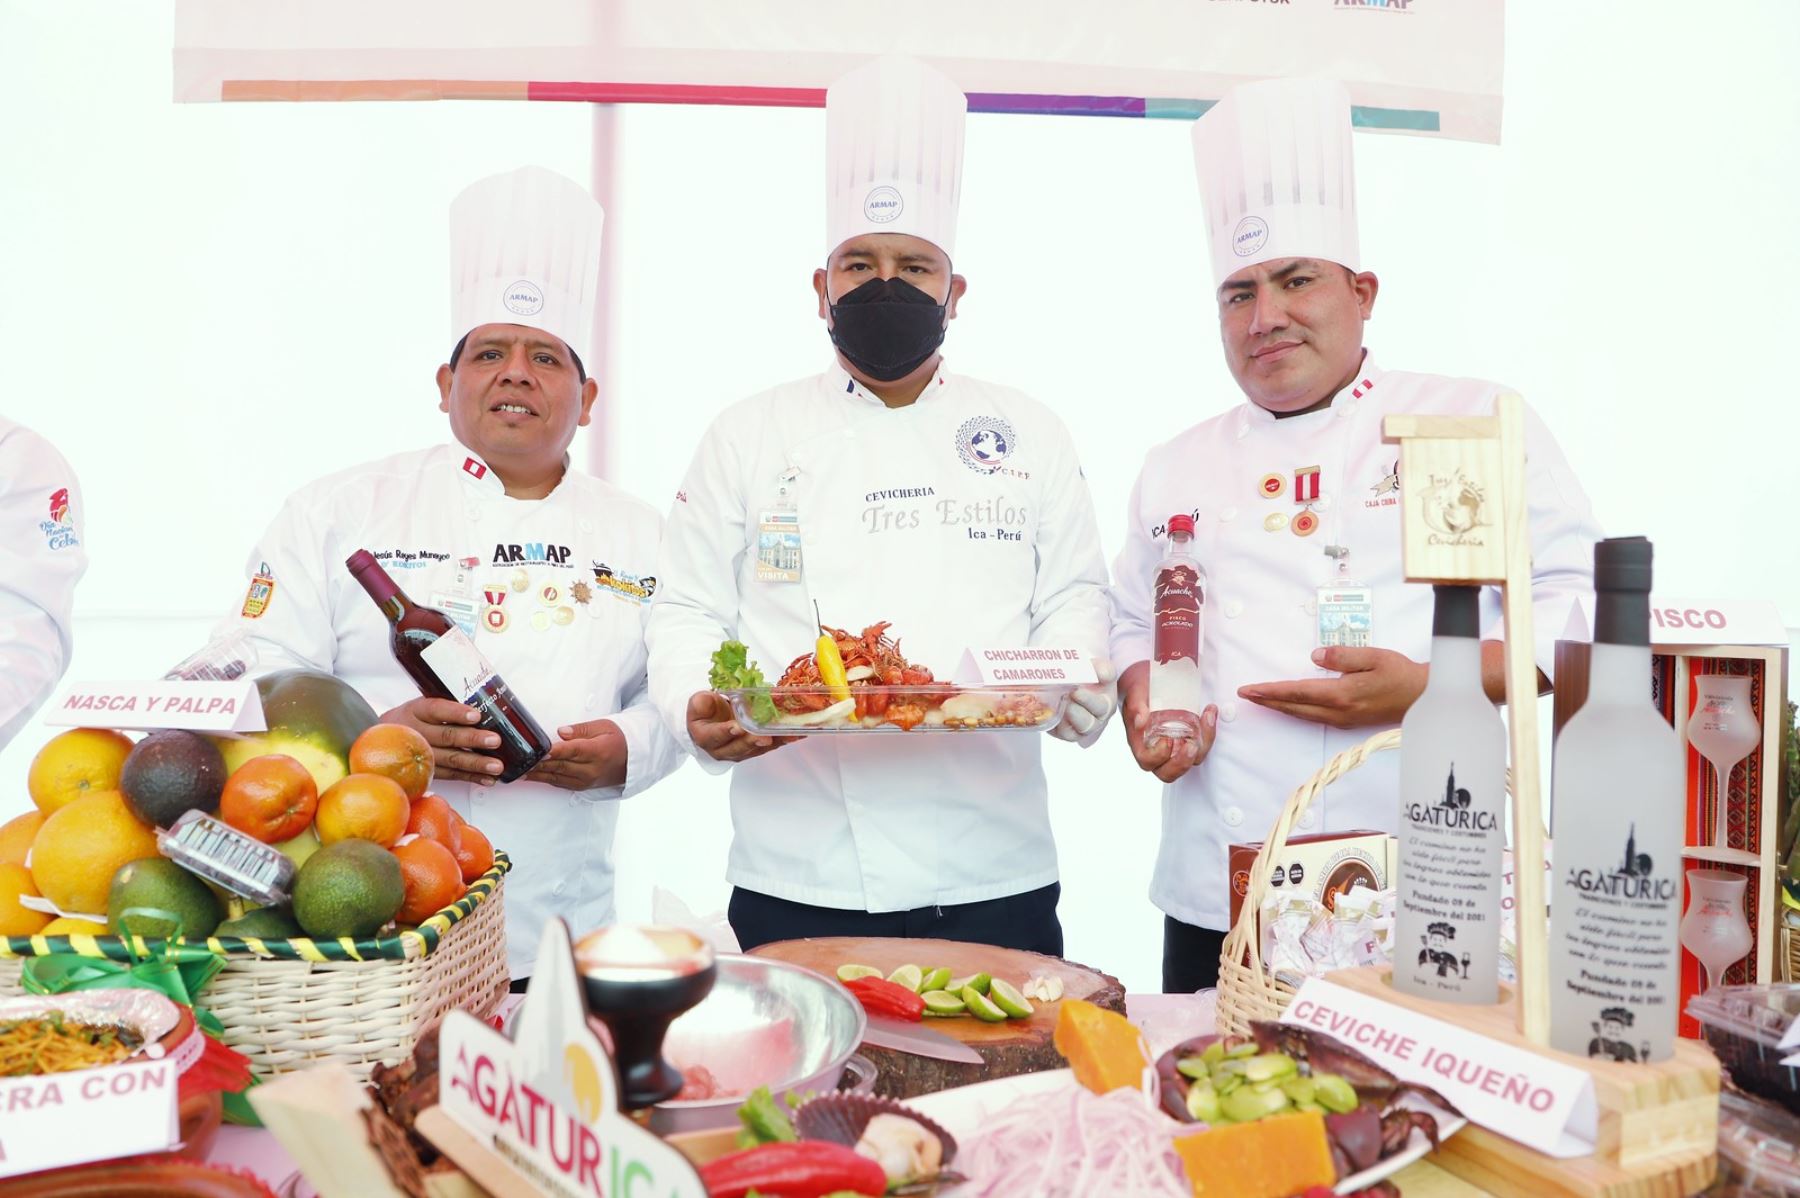 Los cocineros son pieza clave en el desarrollo de la gastronomía regional. Foto: Cortesía Mincetur.